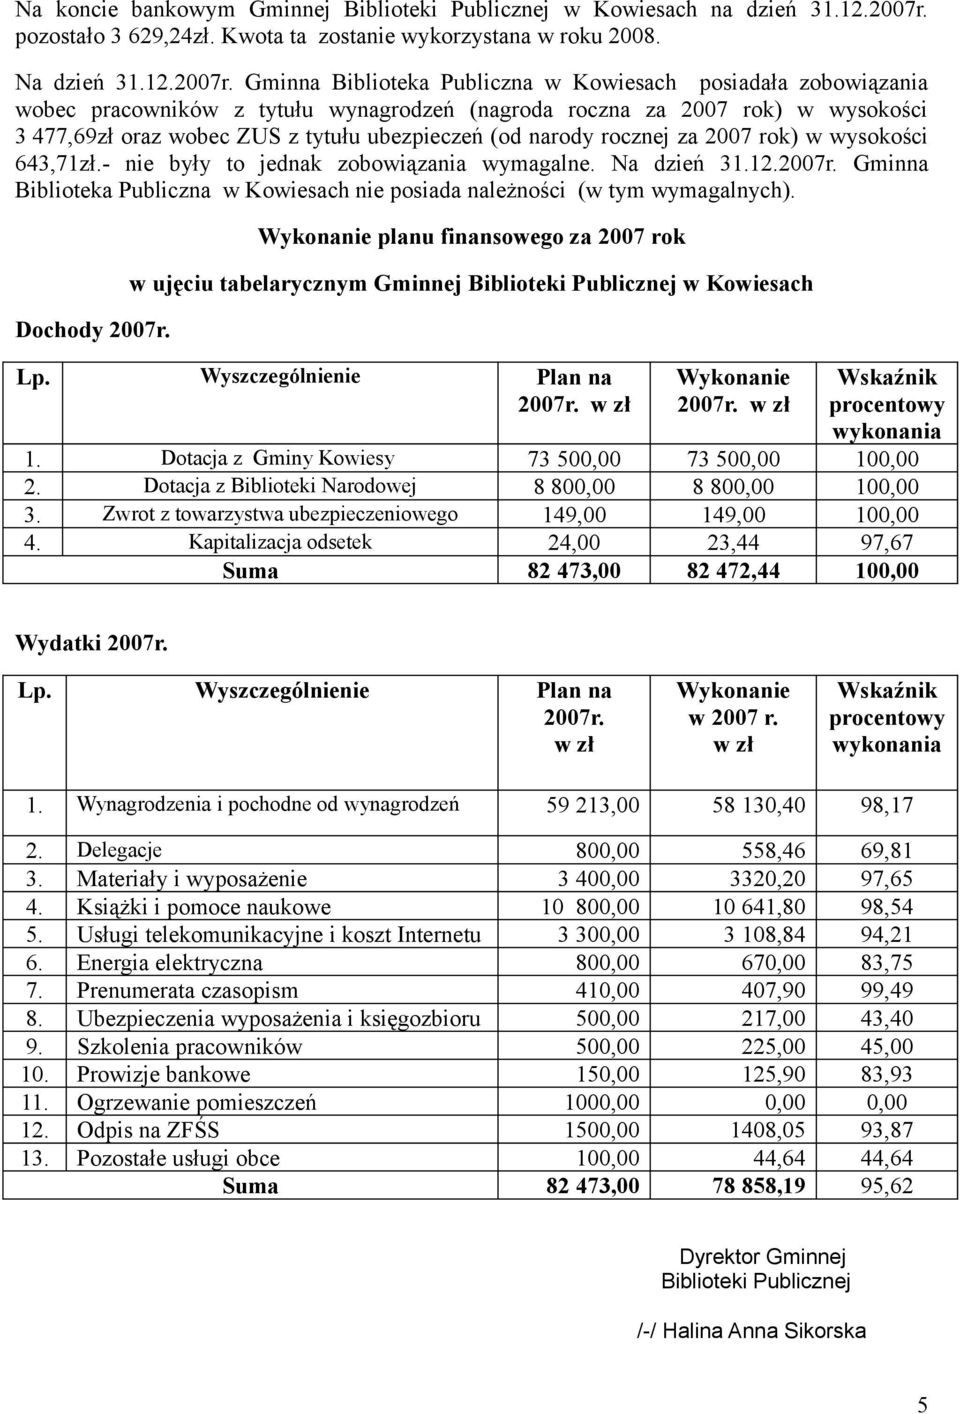 Gminna Biblioteka Publiczna w Kowiesach posiadała zobowiązania wobec pracowników z tytułu wynagrodzeń (nagroda roczna za 2007 rok) w wysokości 3 477,69zł oraz wobec ZUS z tytułu ubezpieczeń (od